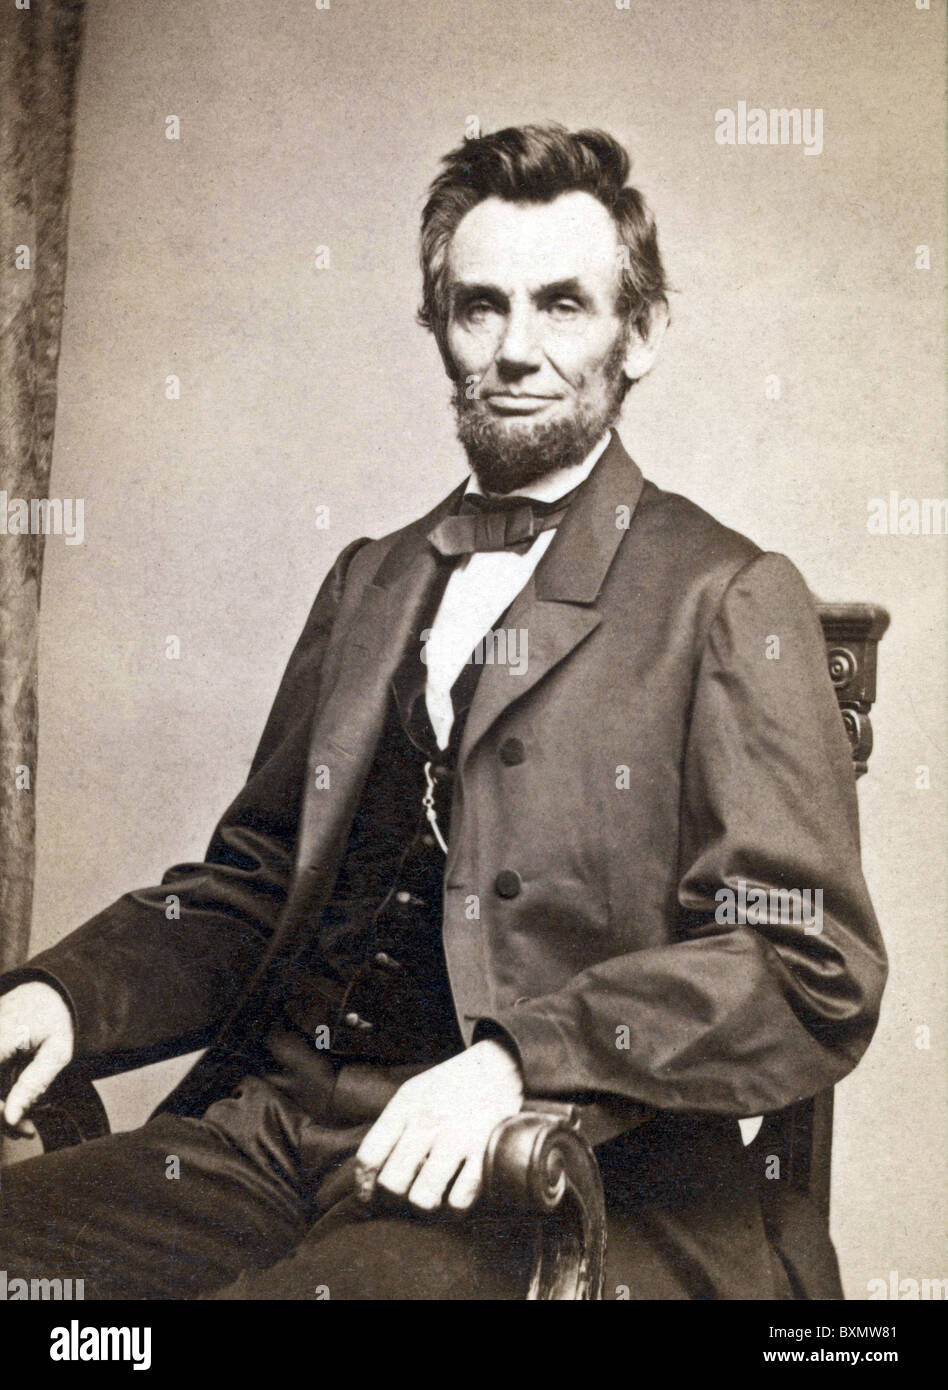 Abraham Lincoln, le 16e président des États-Unis d'Amérique Banque D'Images